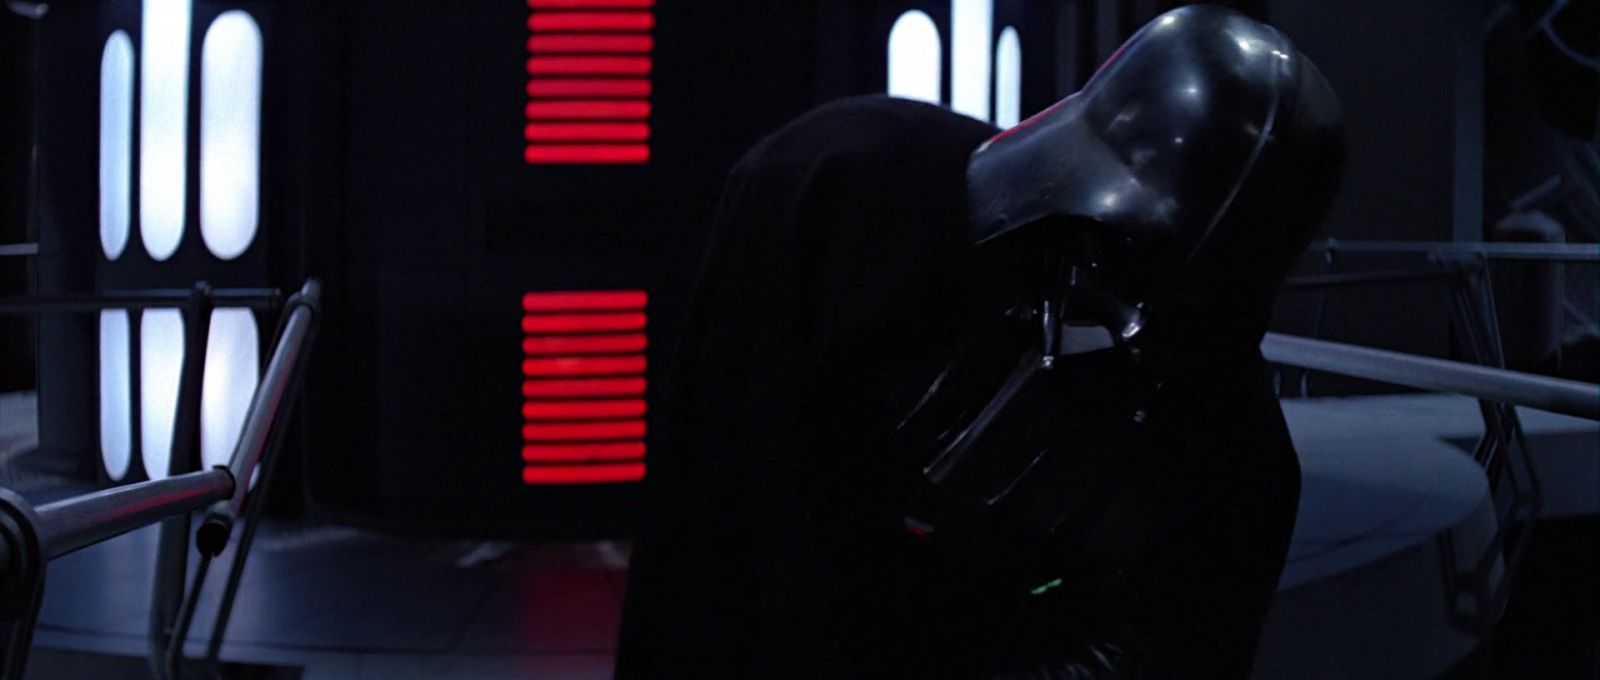 ROTJ-Vader-13611.jpg